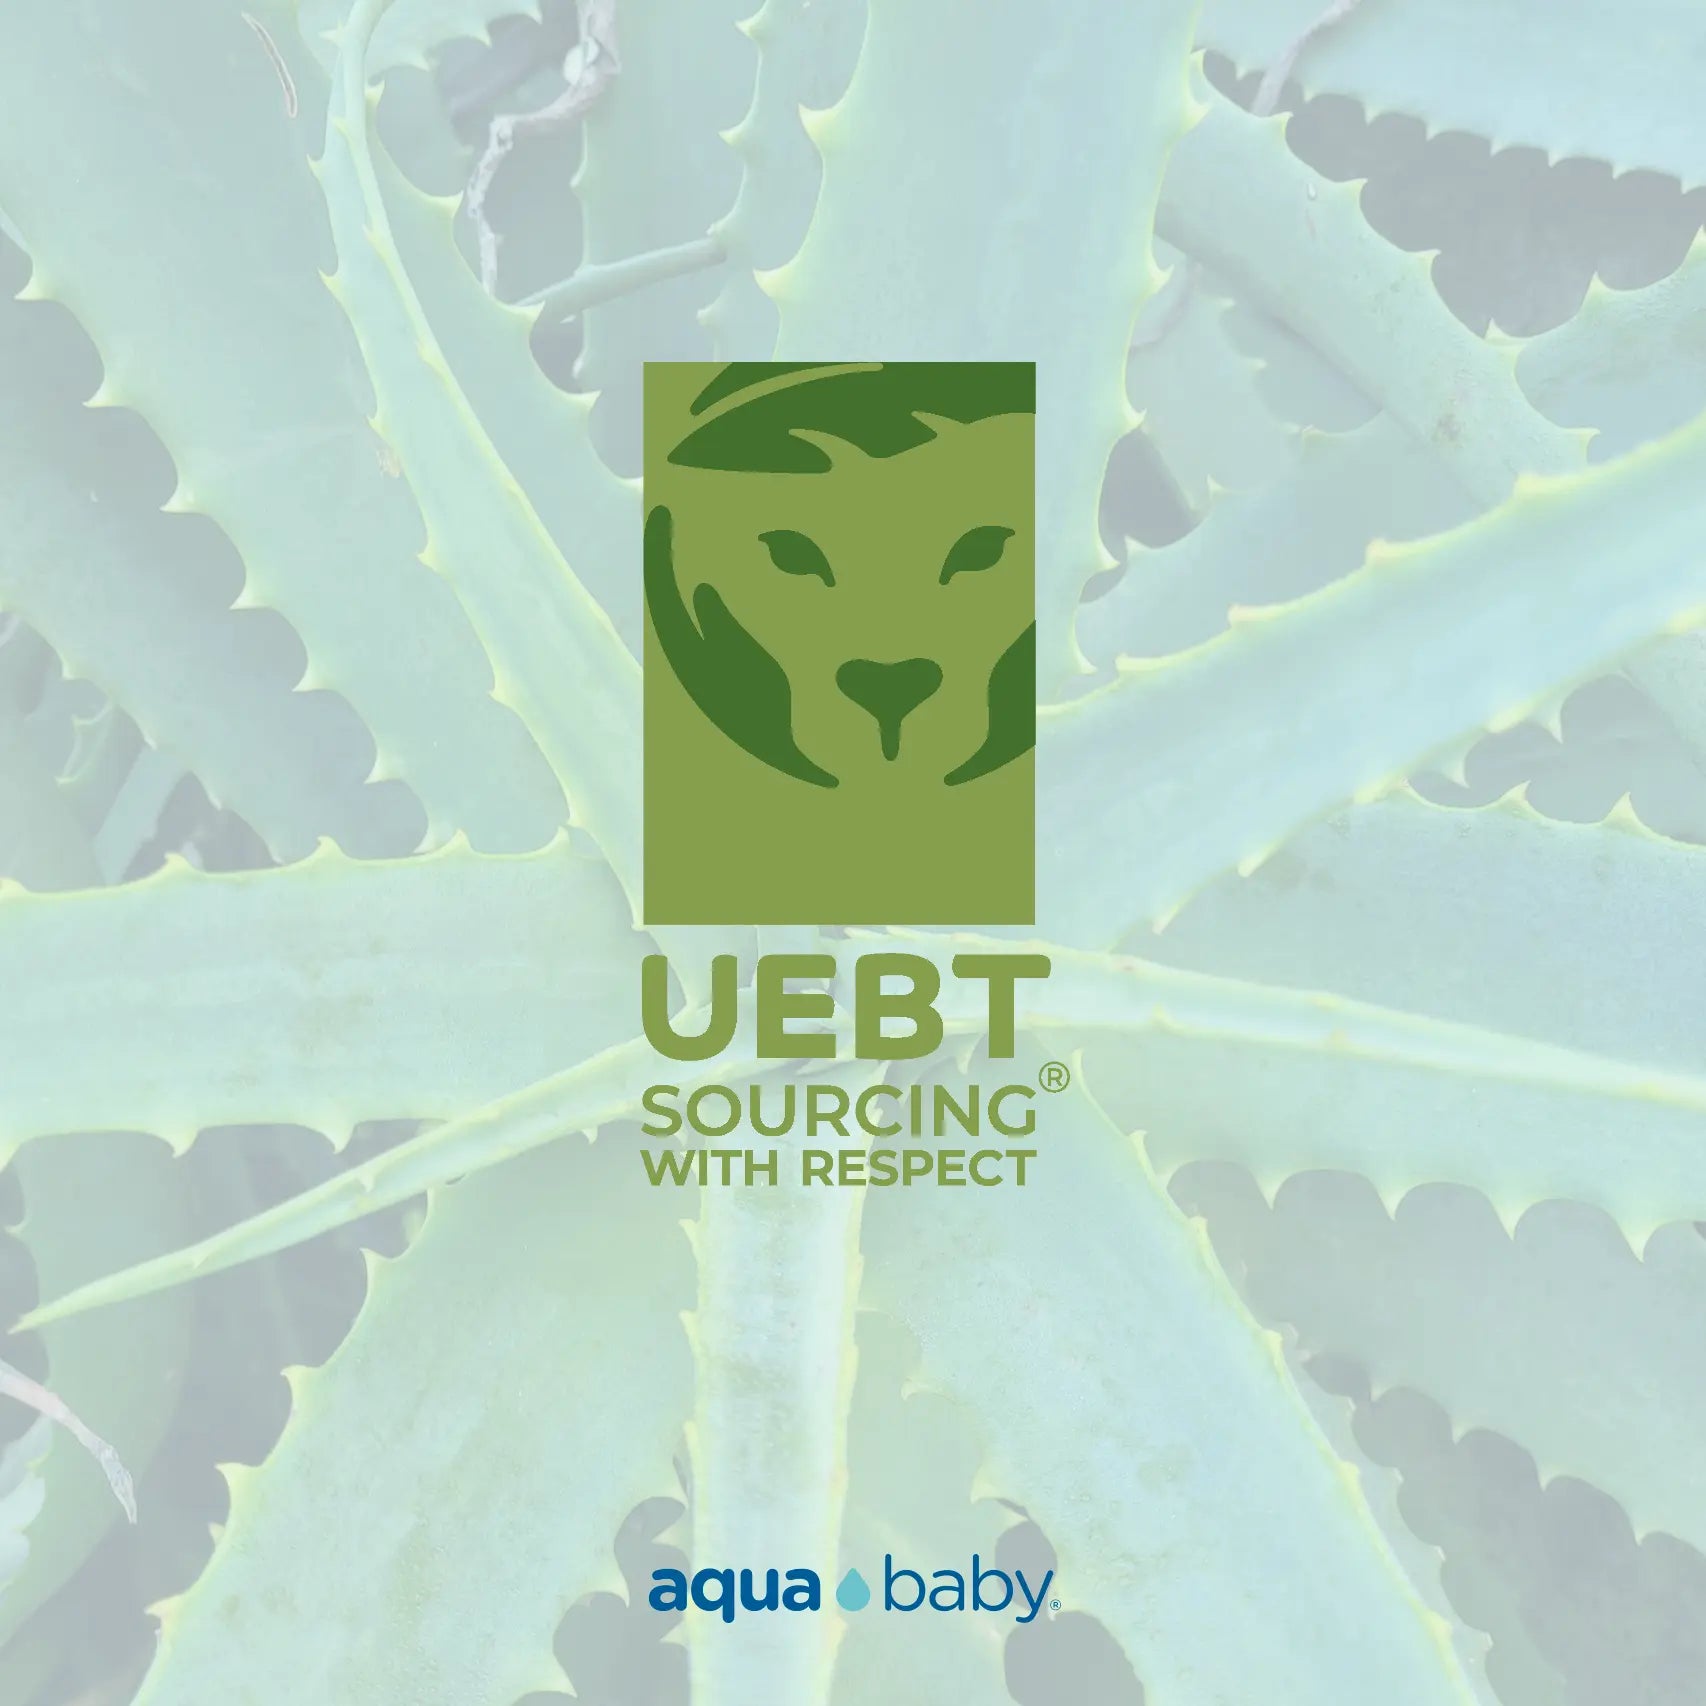 Obtención-del-Certificado-UEBT-Un-Compromiso-con-la-Sostenibilidad Aqua Baby